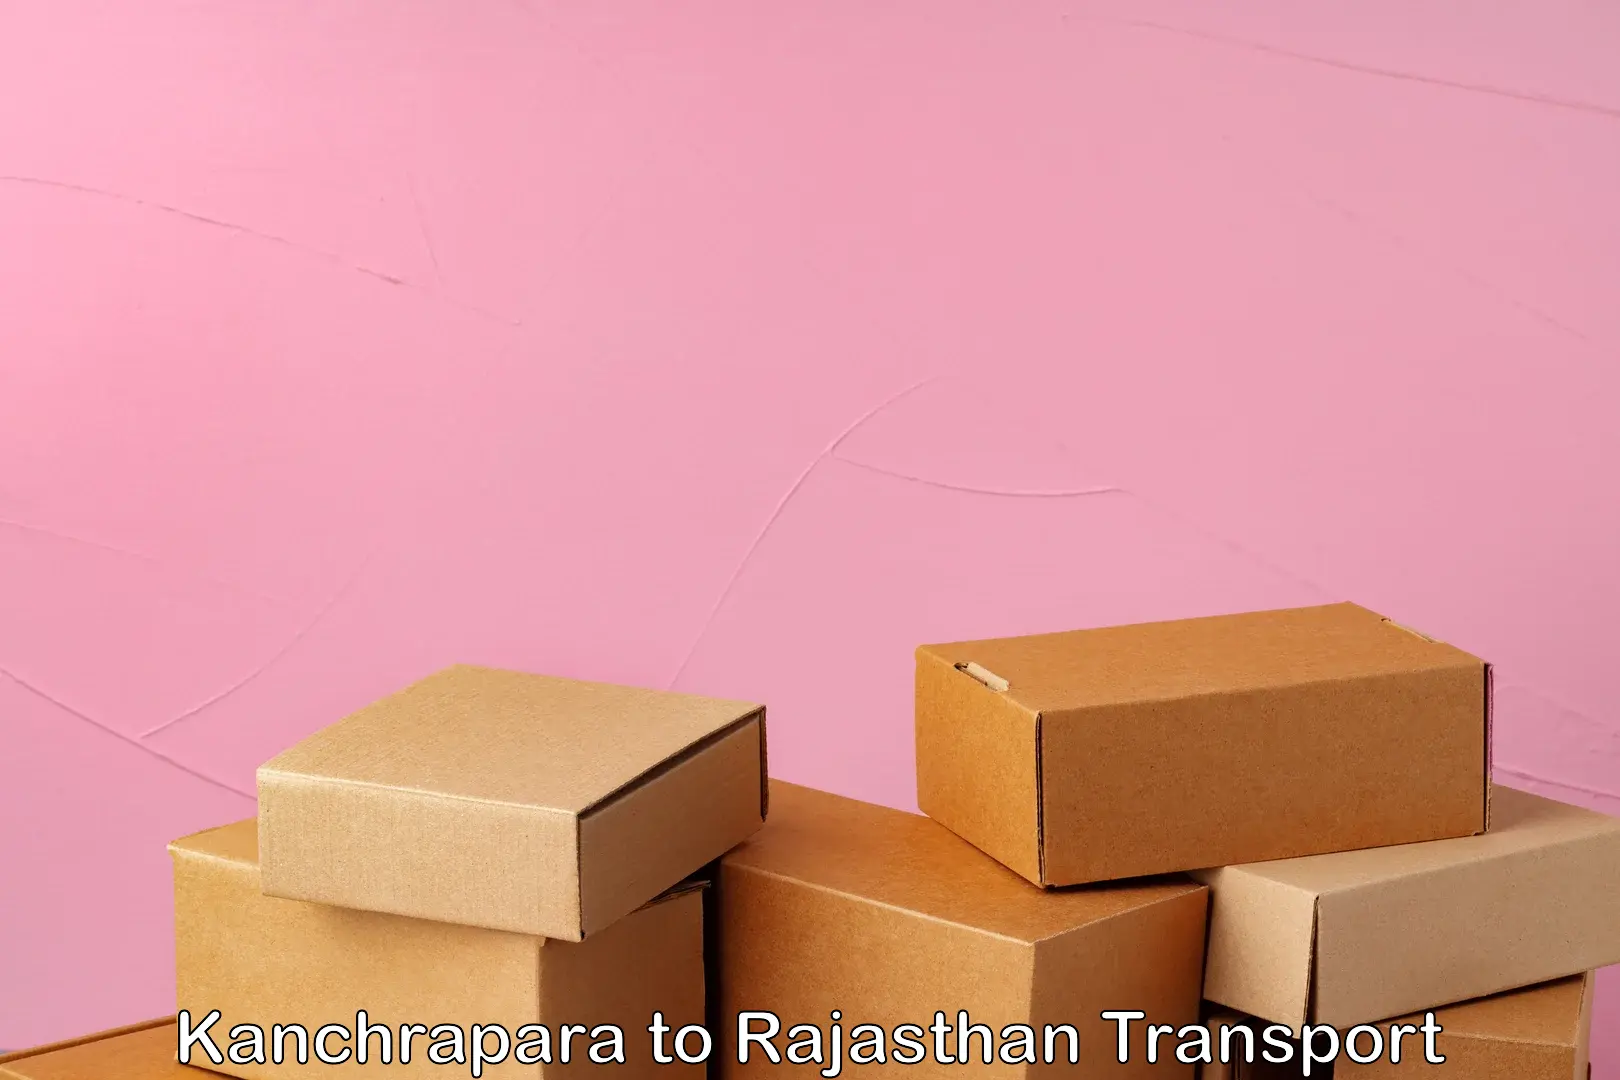 Cargo train transport services Kanchrapara to Rajasthan